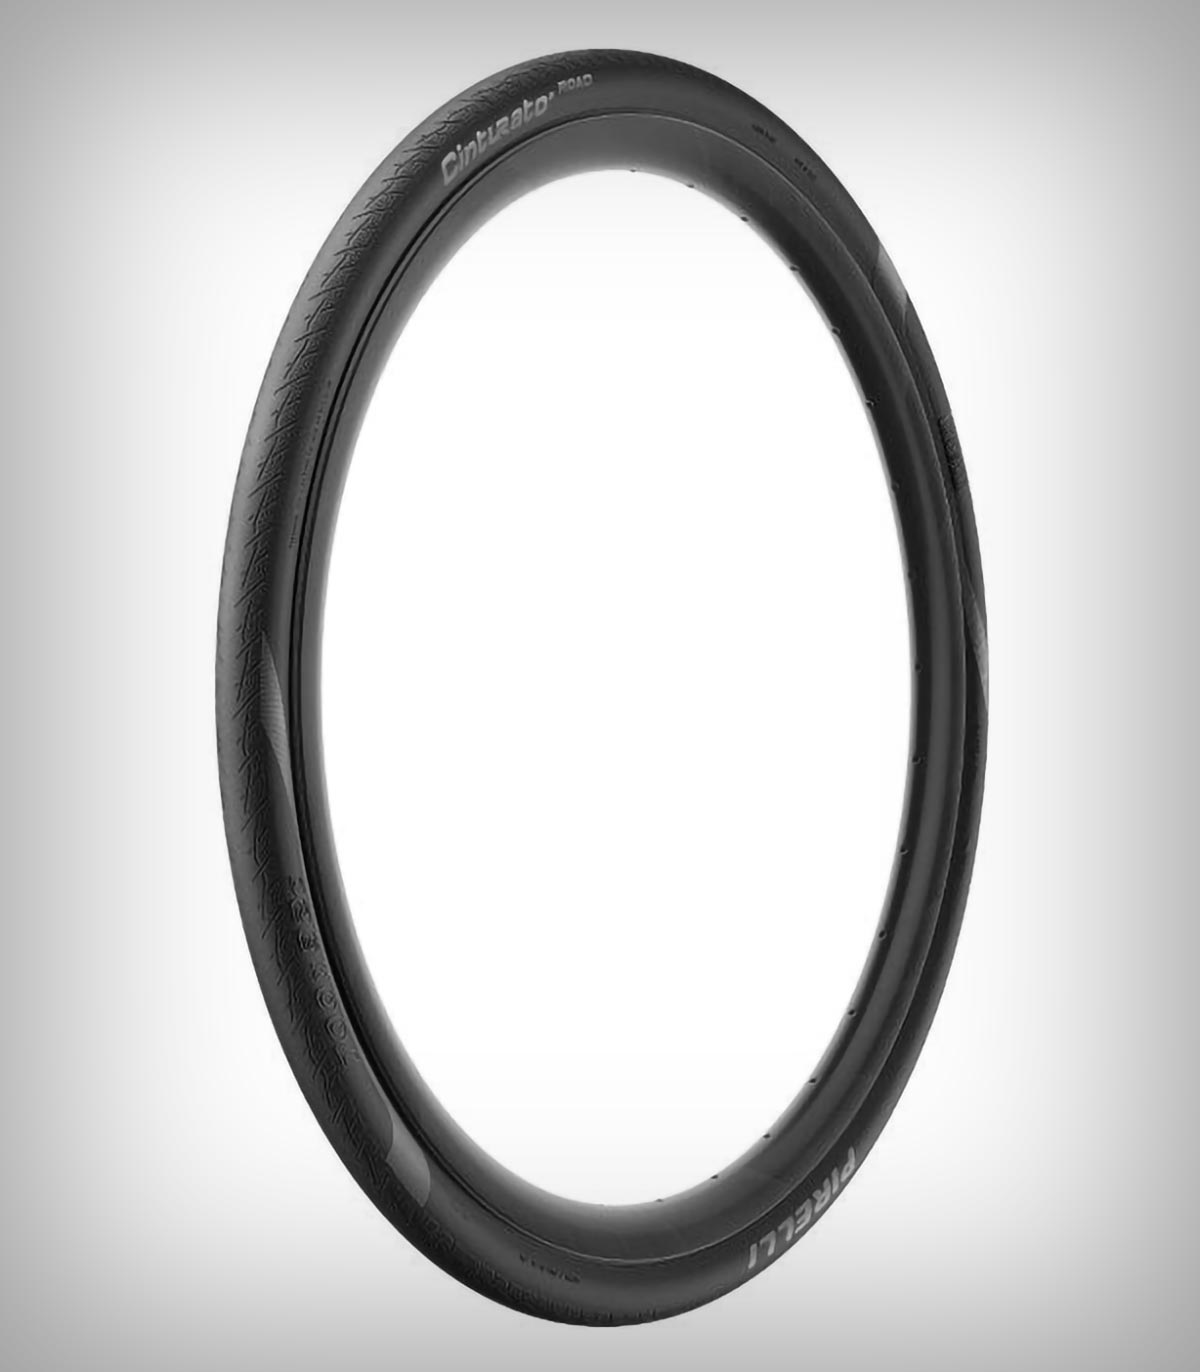 Pirelli Cinturato Road, un neumático para los ciclistas que prefieren comodidad y máxima durabilidad